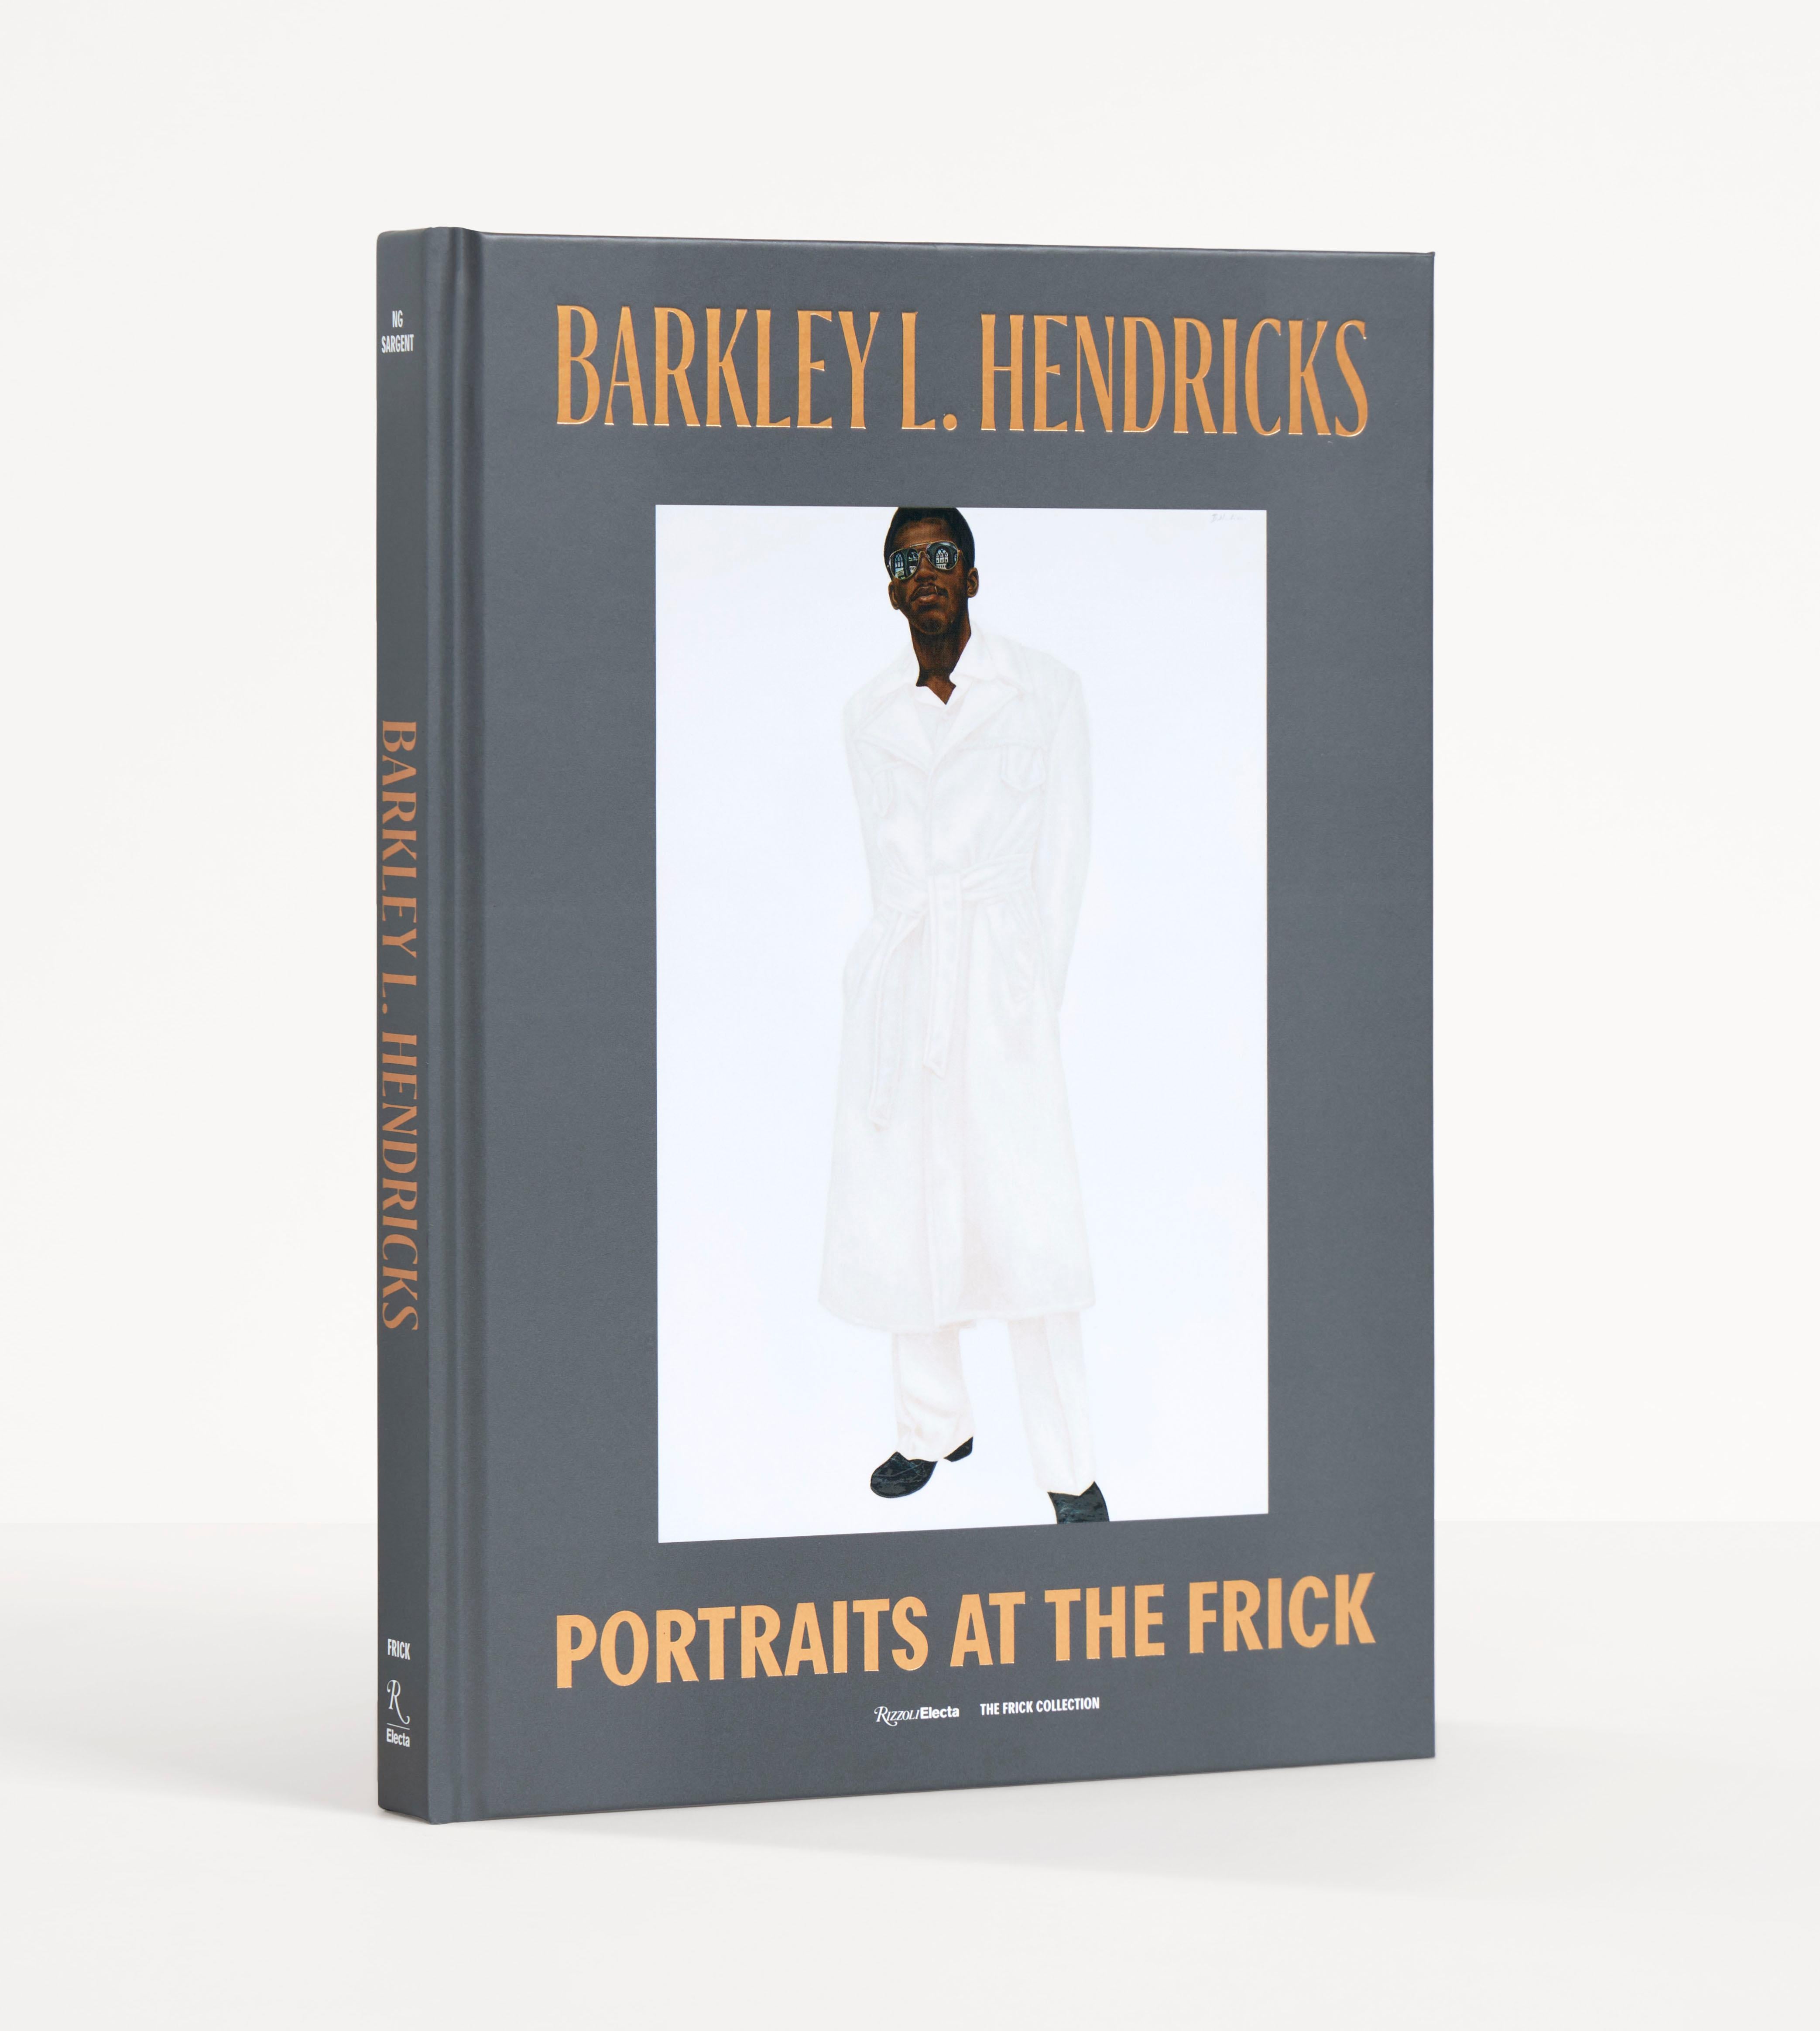 Der amerikanische Künstler Barkley L. Hendricks (1945-2017) revolutionierte ab den späten 1960er Jahren die zeitgenössische Porträtmalerei mit seinen eindringlichen Darstellungen schwarzer Personen. Dieses Buch kontextualisiert Hendricks' Porträts